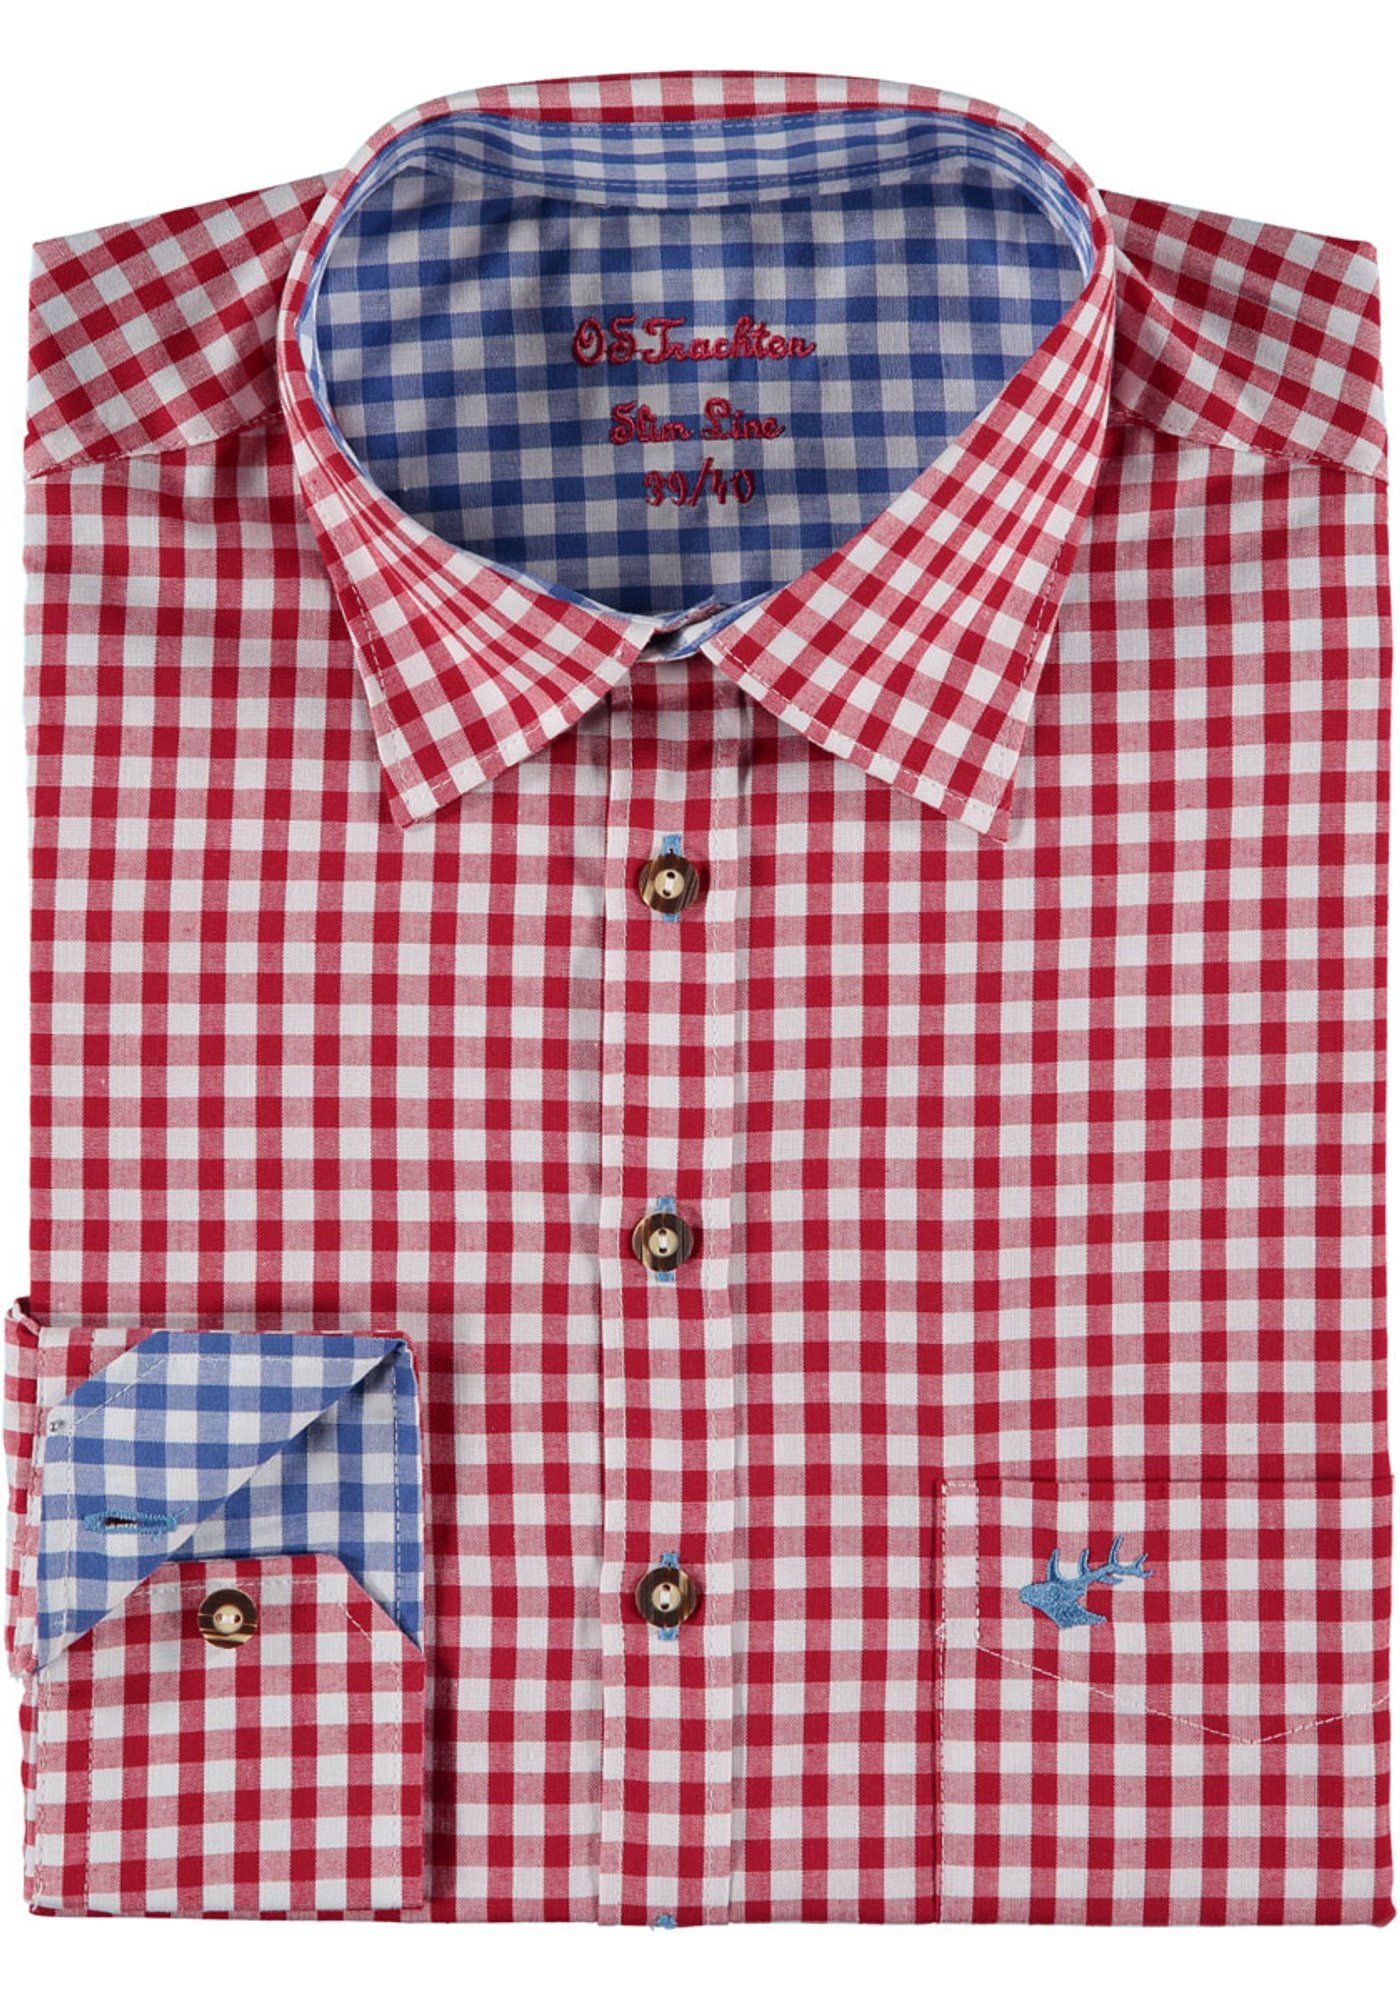 Rumpf Smegy mit Hirsch-Stickerei, in mittelrot und extra OS-Trachten Trachtenhemd lang Ärmeln